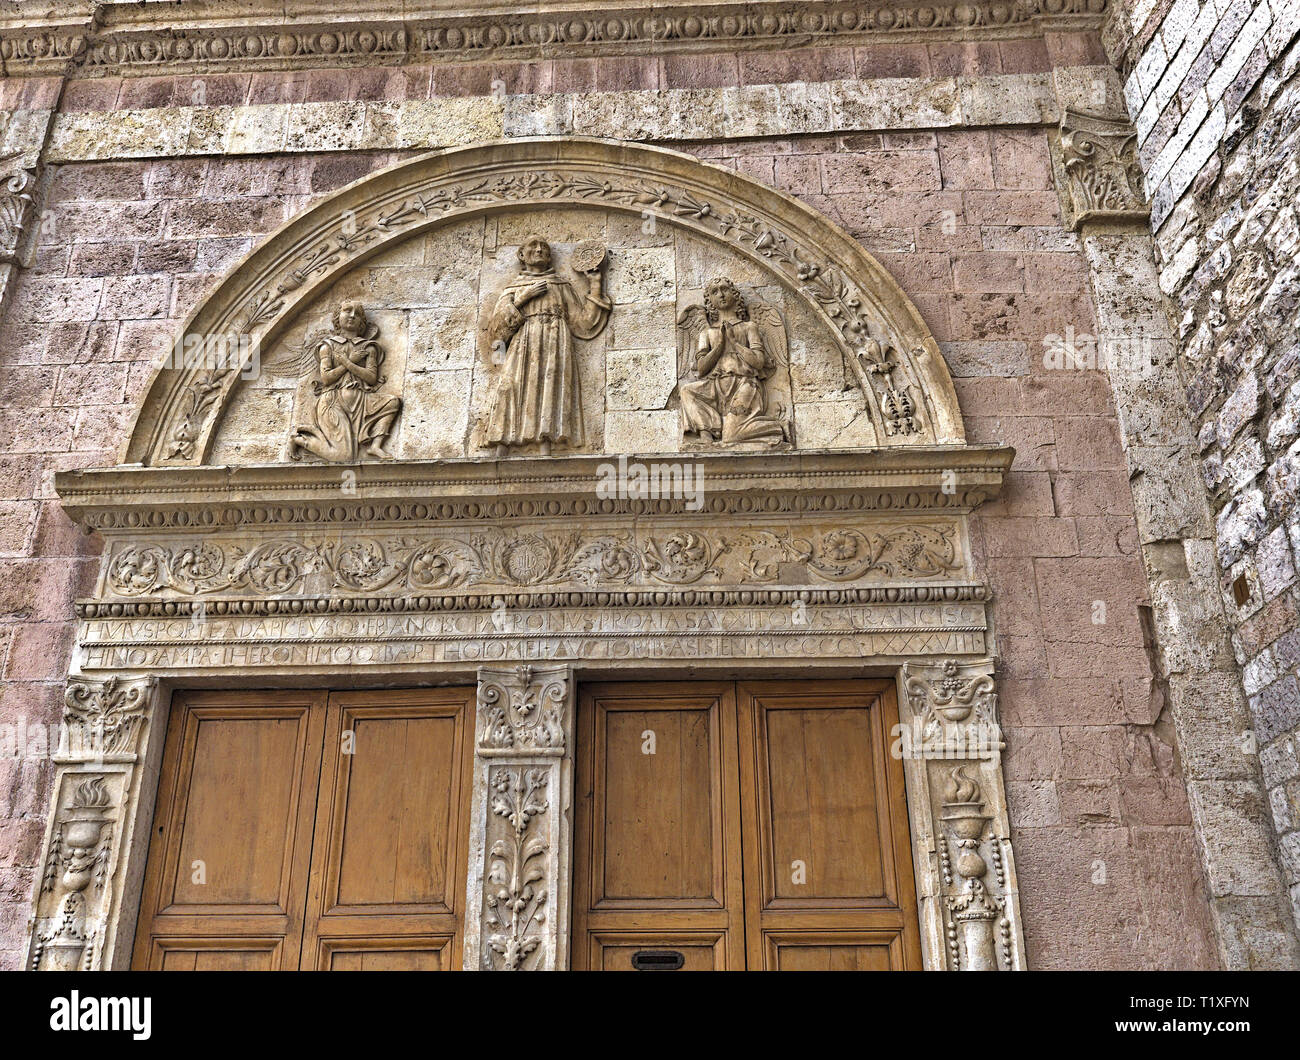 Assisi Umbria Italia - Italy. Basilica of Saint Francis (Basilica di San Francesco). Portal, detail. Stock Photo